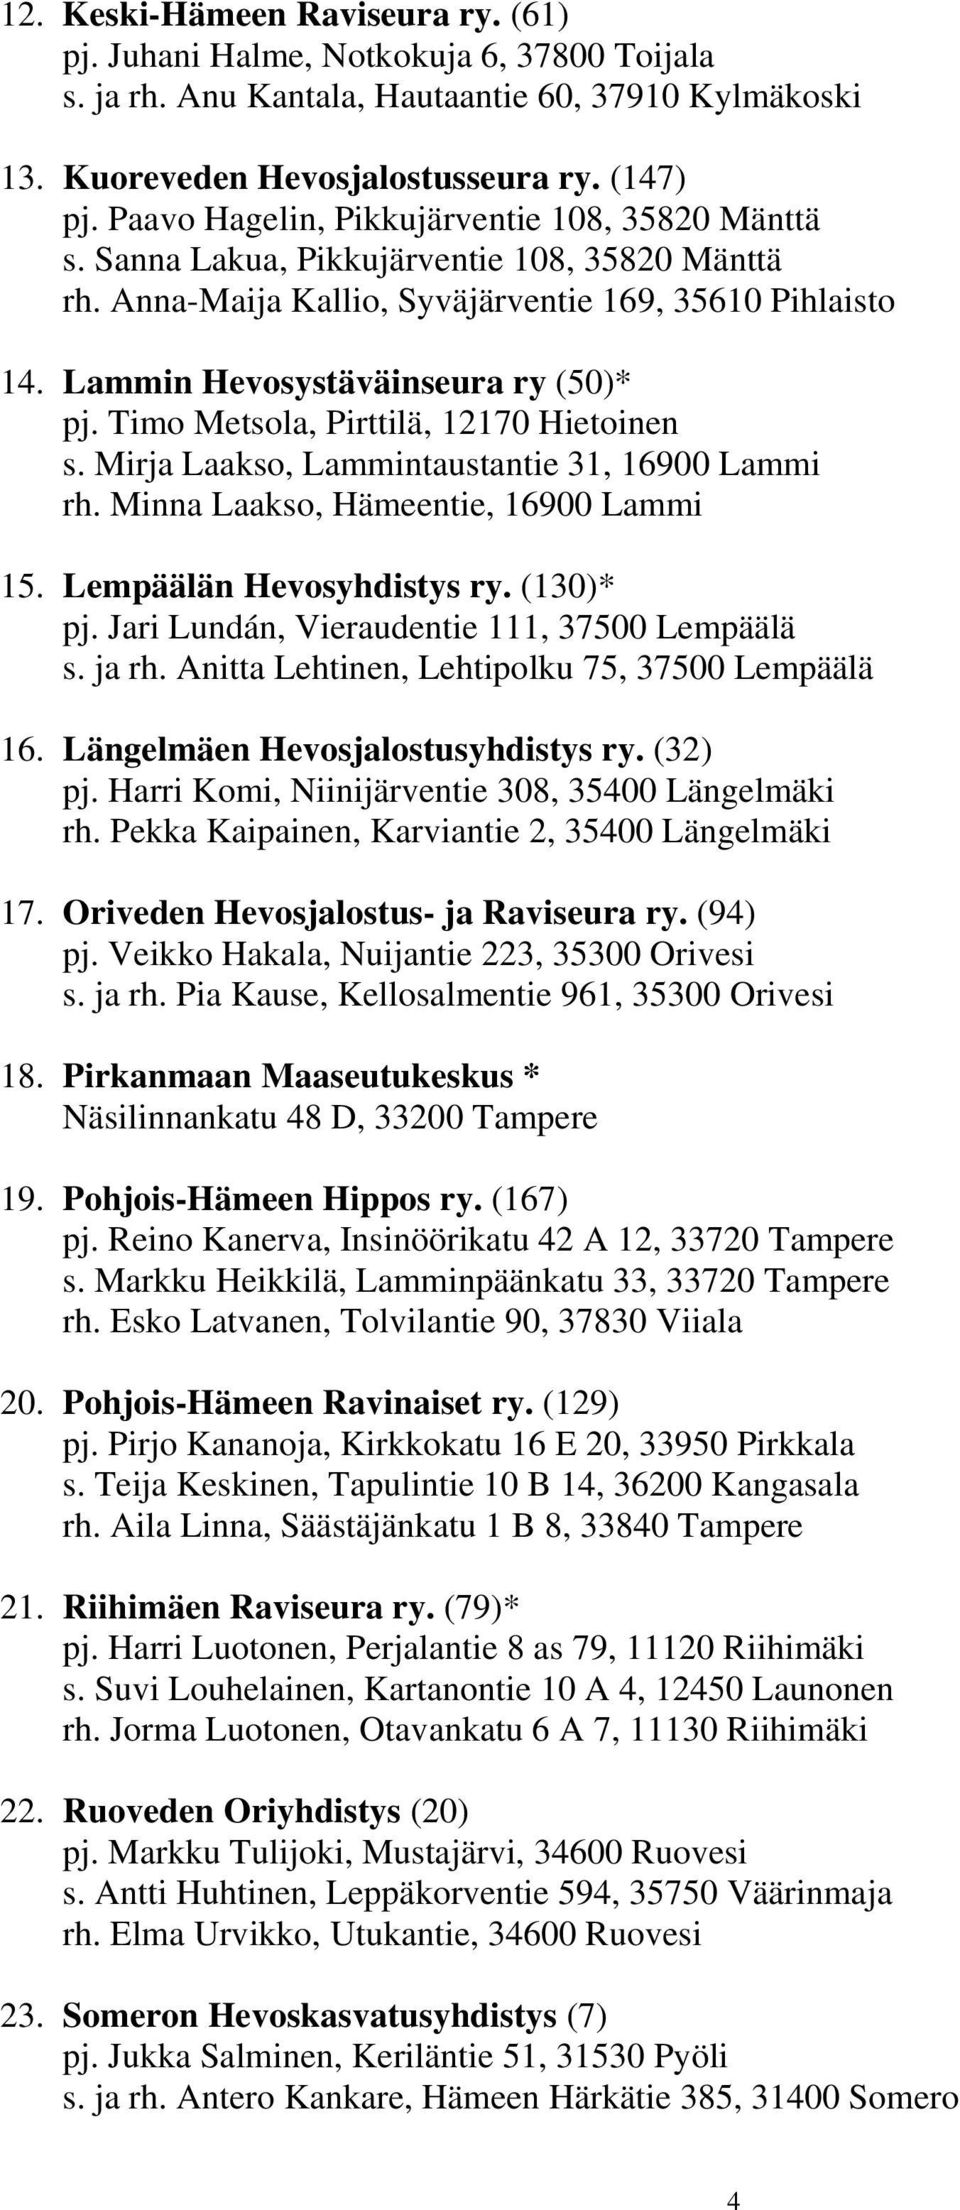 Timo Metsola, Pirttilä, 12170 Hietoinen s. Mirja Laakso, Lammintaustantie 31, 16900 Lammi rh. Minna Laakso, Hämeentie, 16900 Lammi 15. Lempäälän Hevosyhdistys ry. (130)* pj.